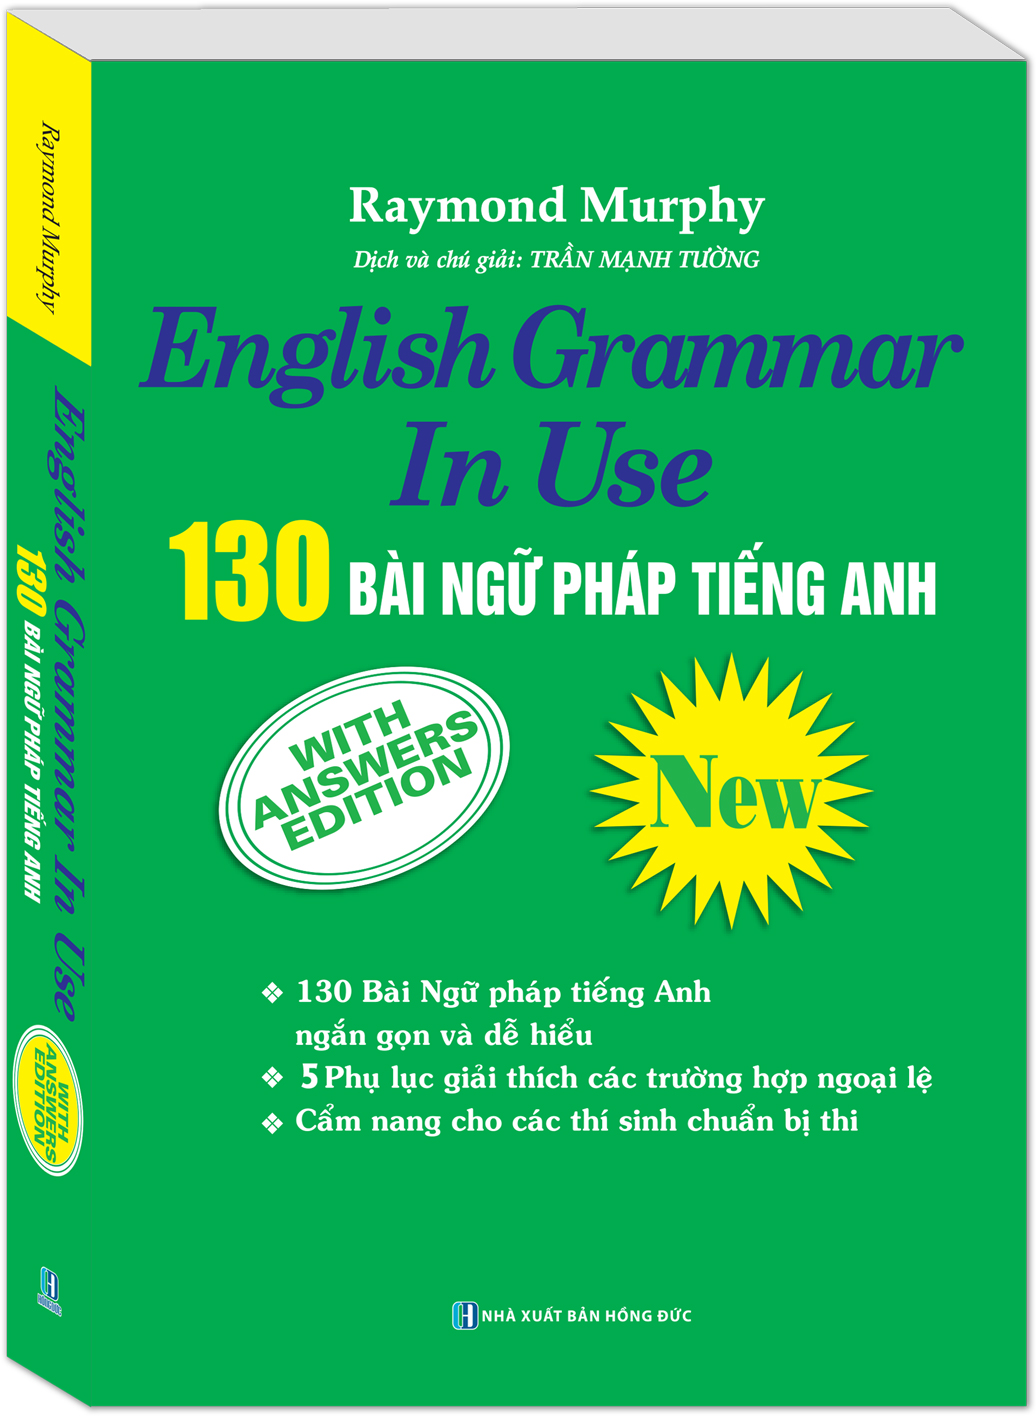 English Grammar in Use - 130 bài ngữ pháp tiếng Anh